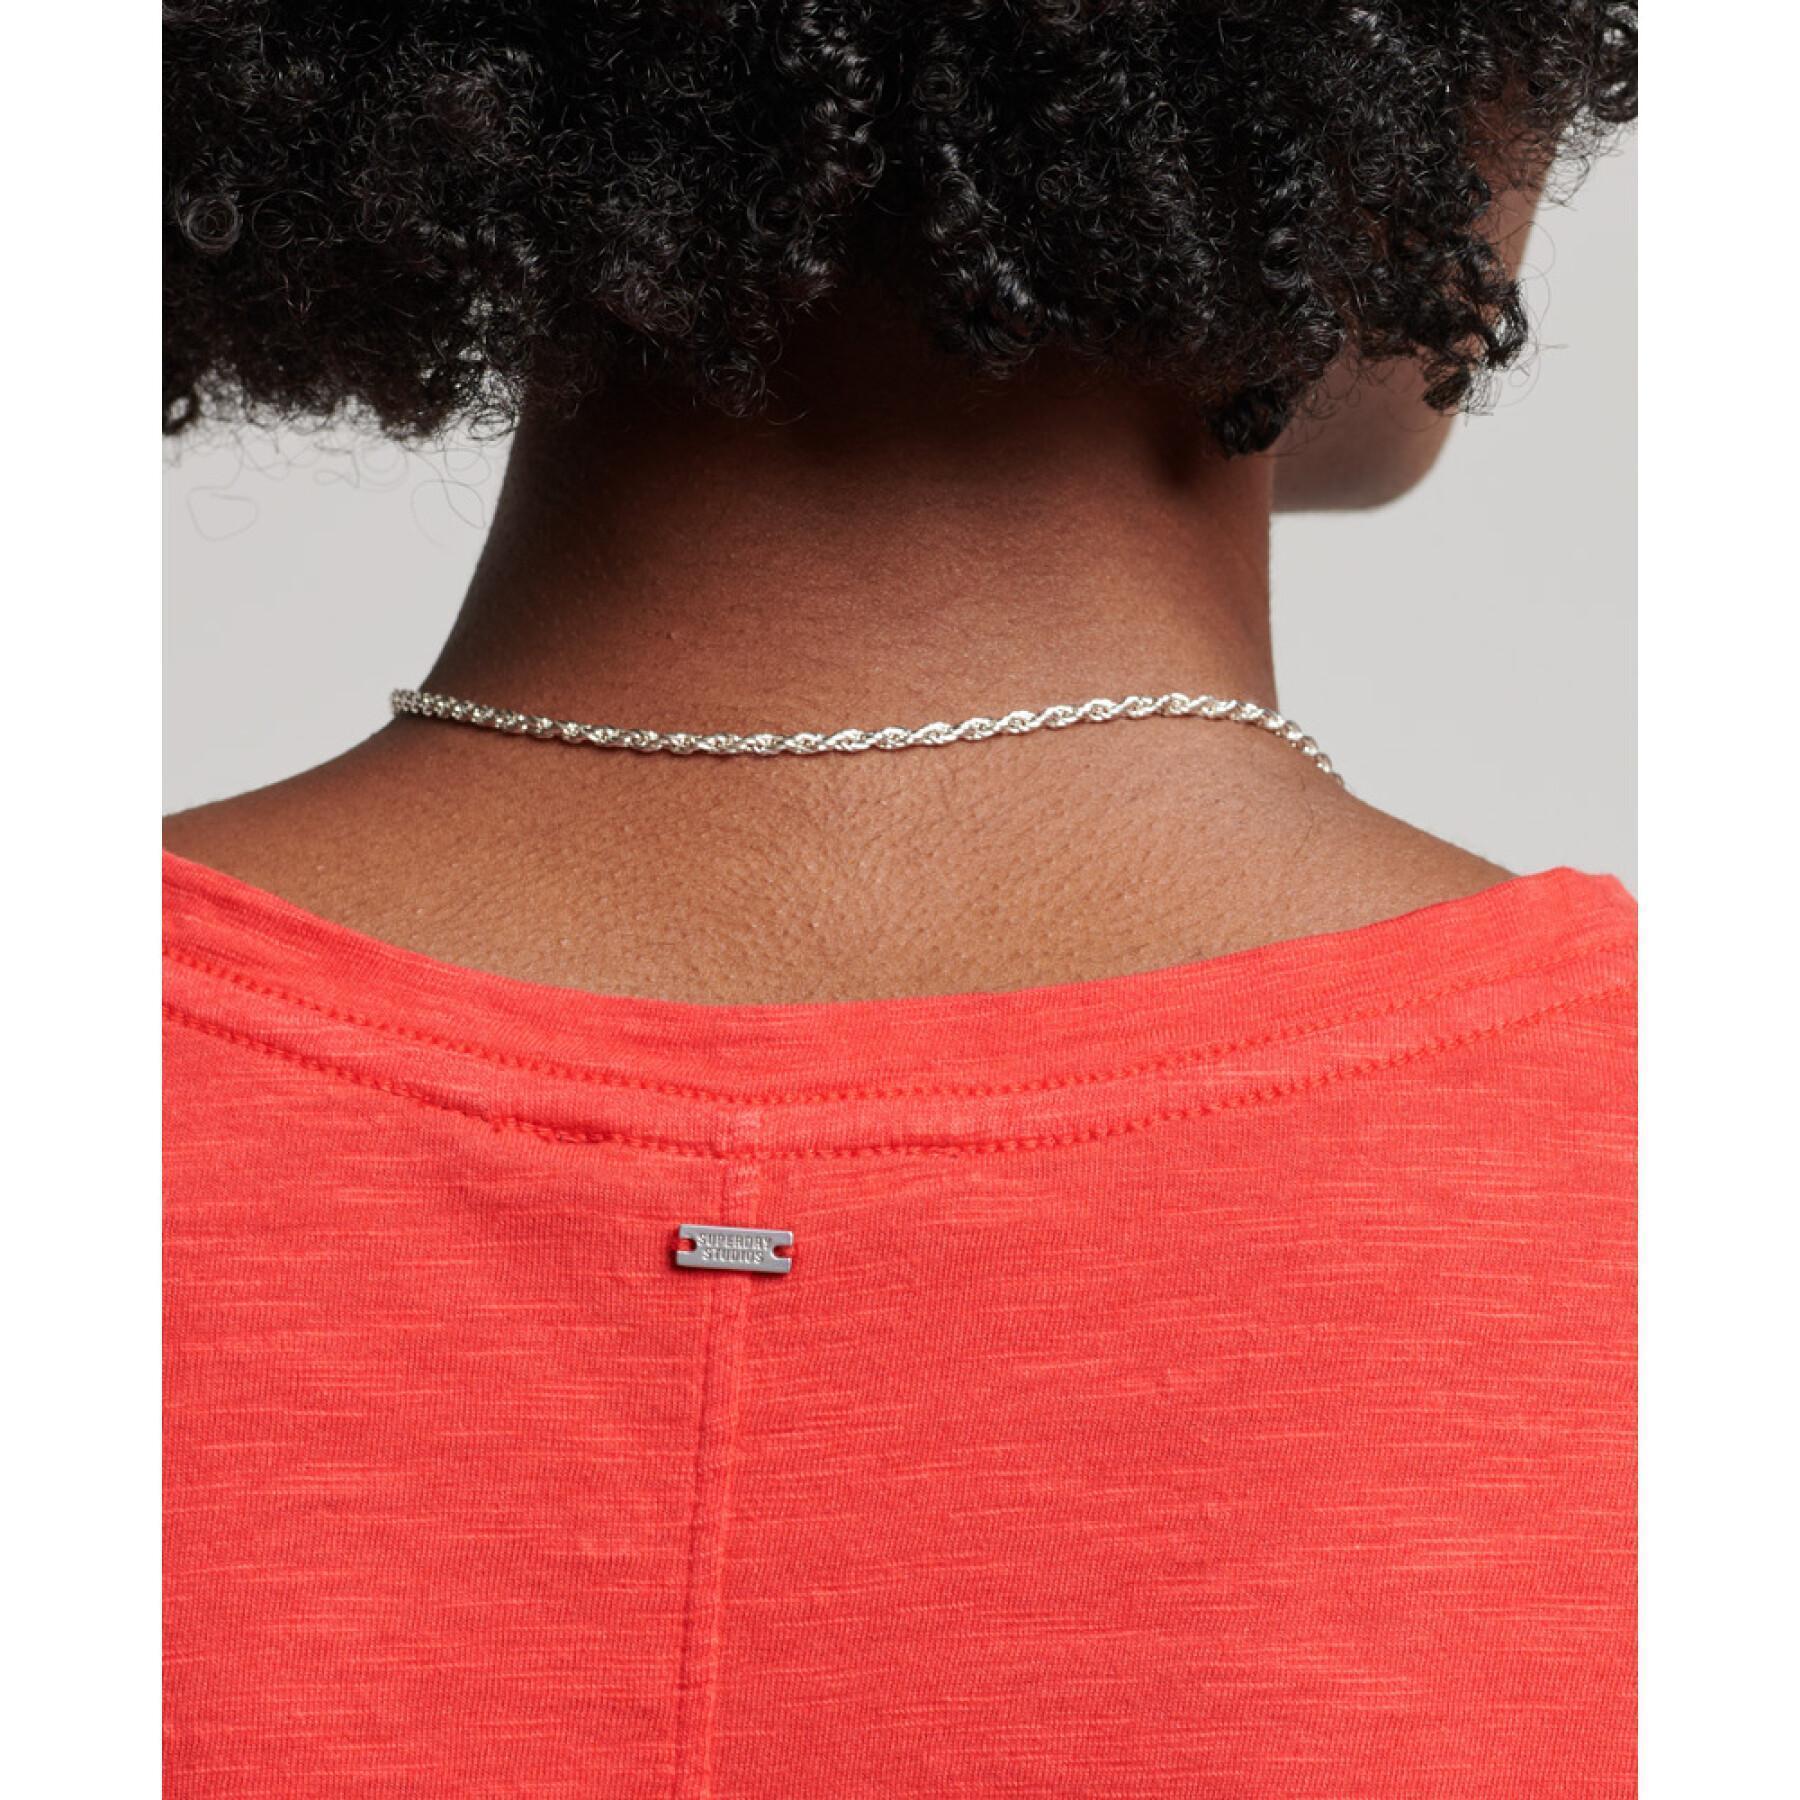 Camiseta de mujer con cuello de pico bordado y flameado Superdry